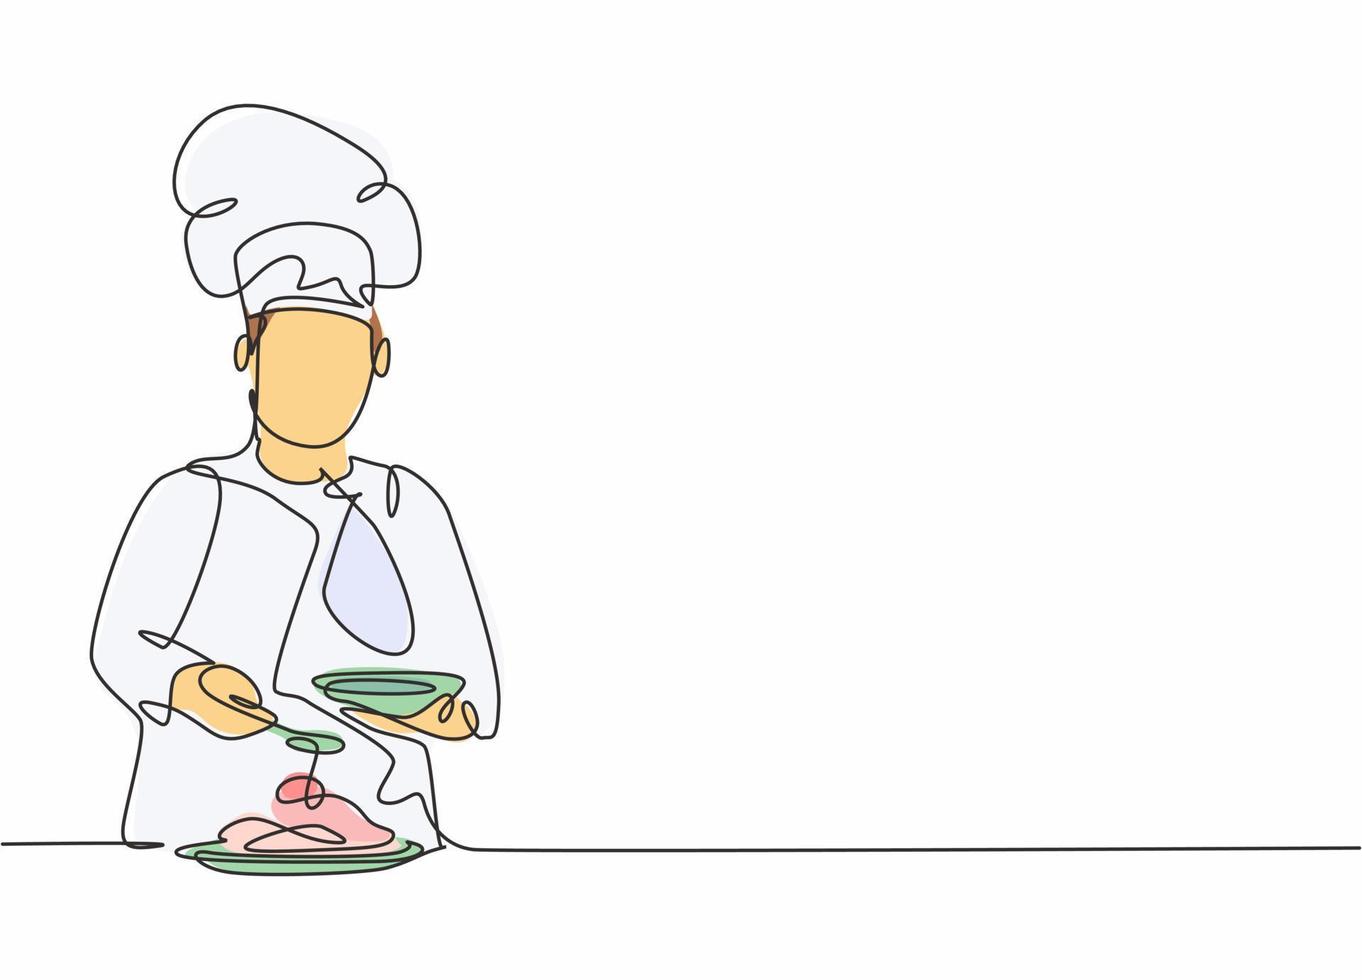 dibujo de línea continua única del joven chef masculino feliz vertiendo salsa en el plato principal para servir al cliente. preparación de alimentos saludables concepto de diseño de dibujo de una línea vector ilustración de minimalismo